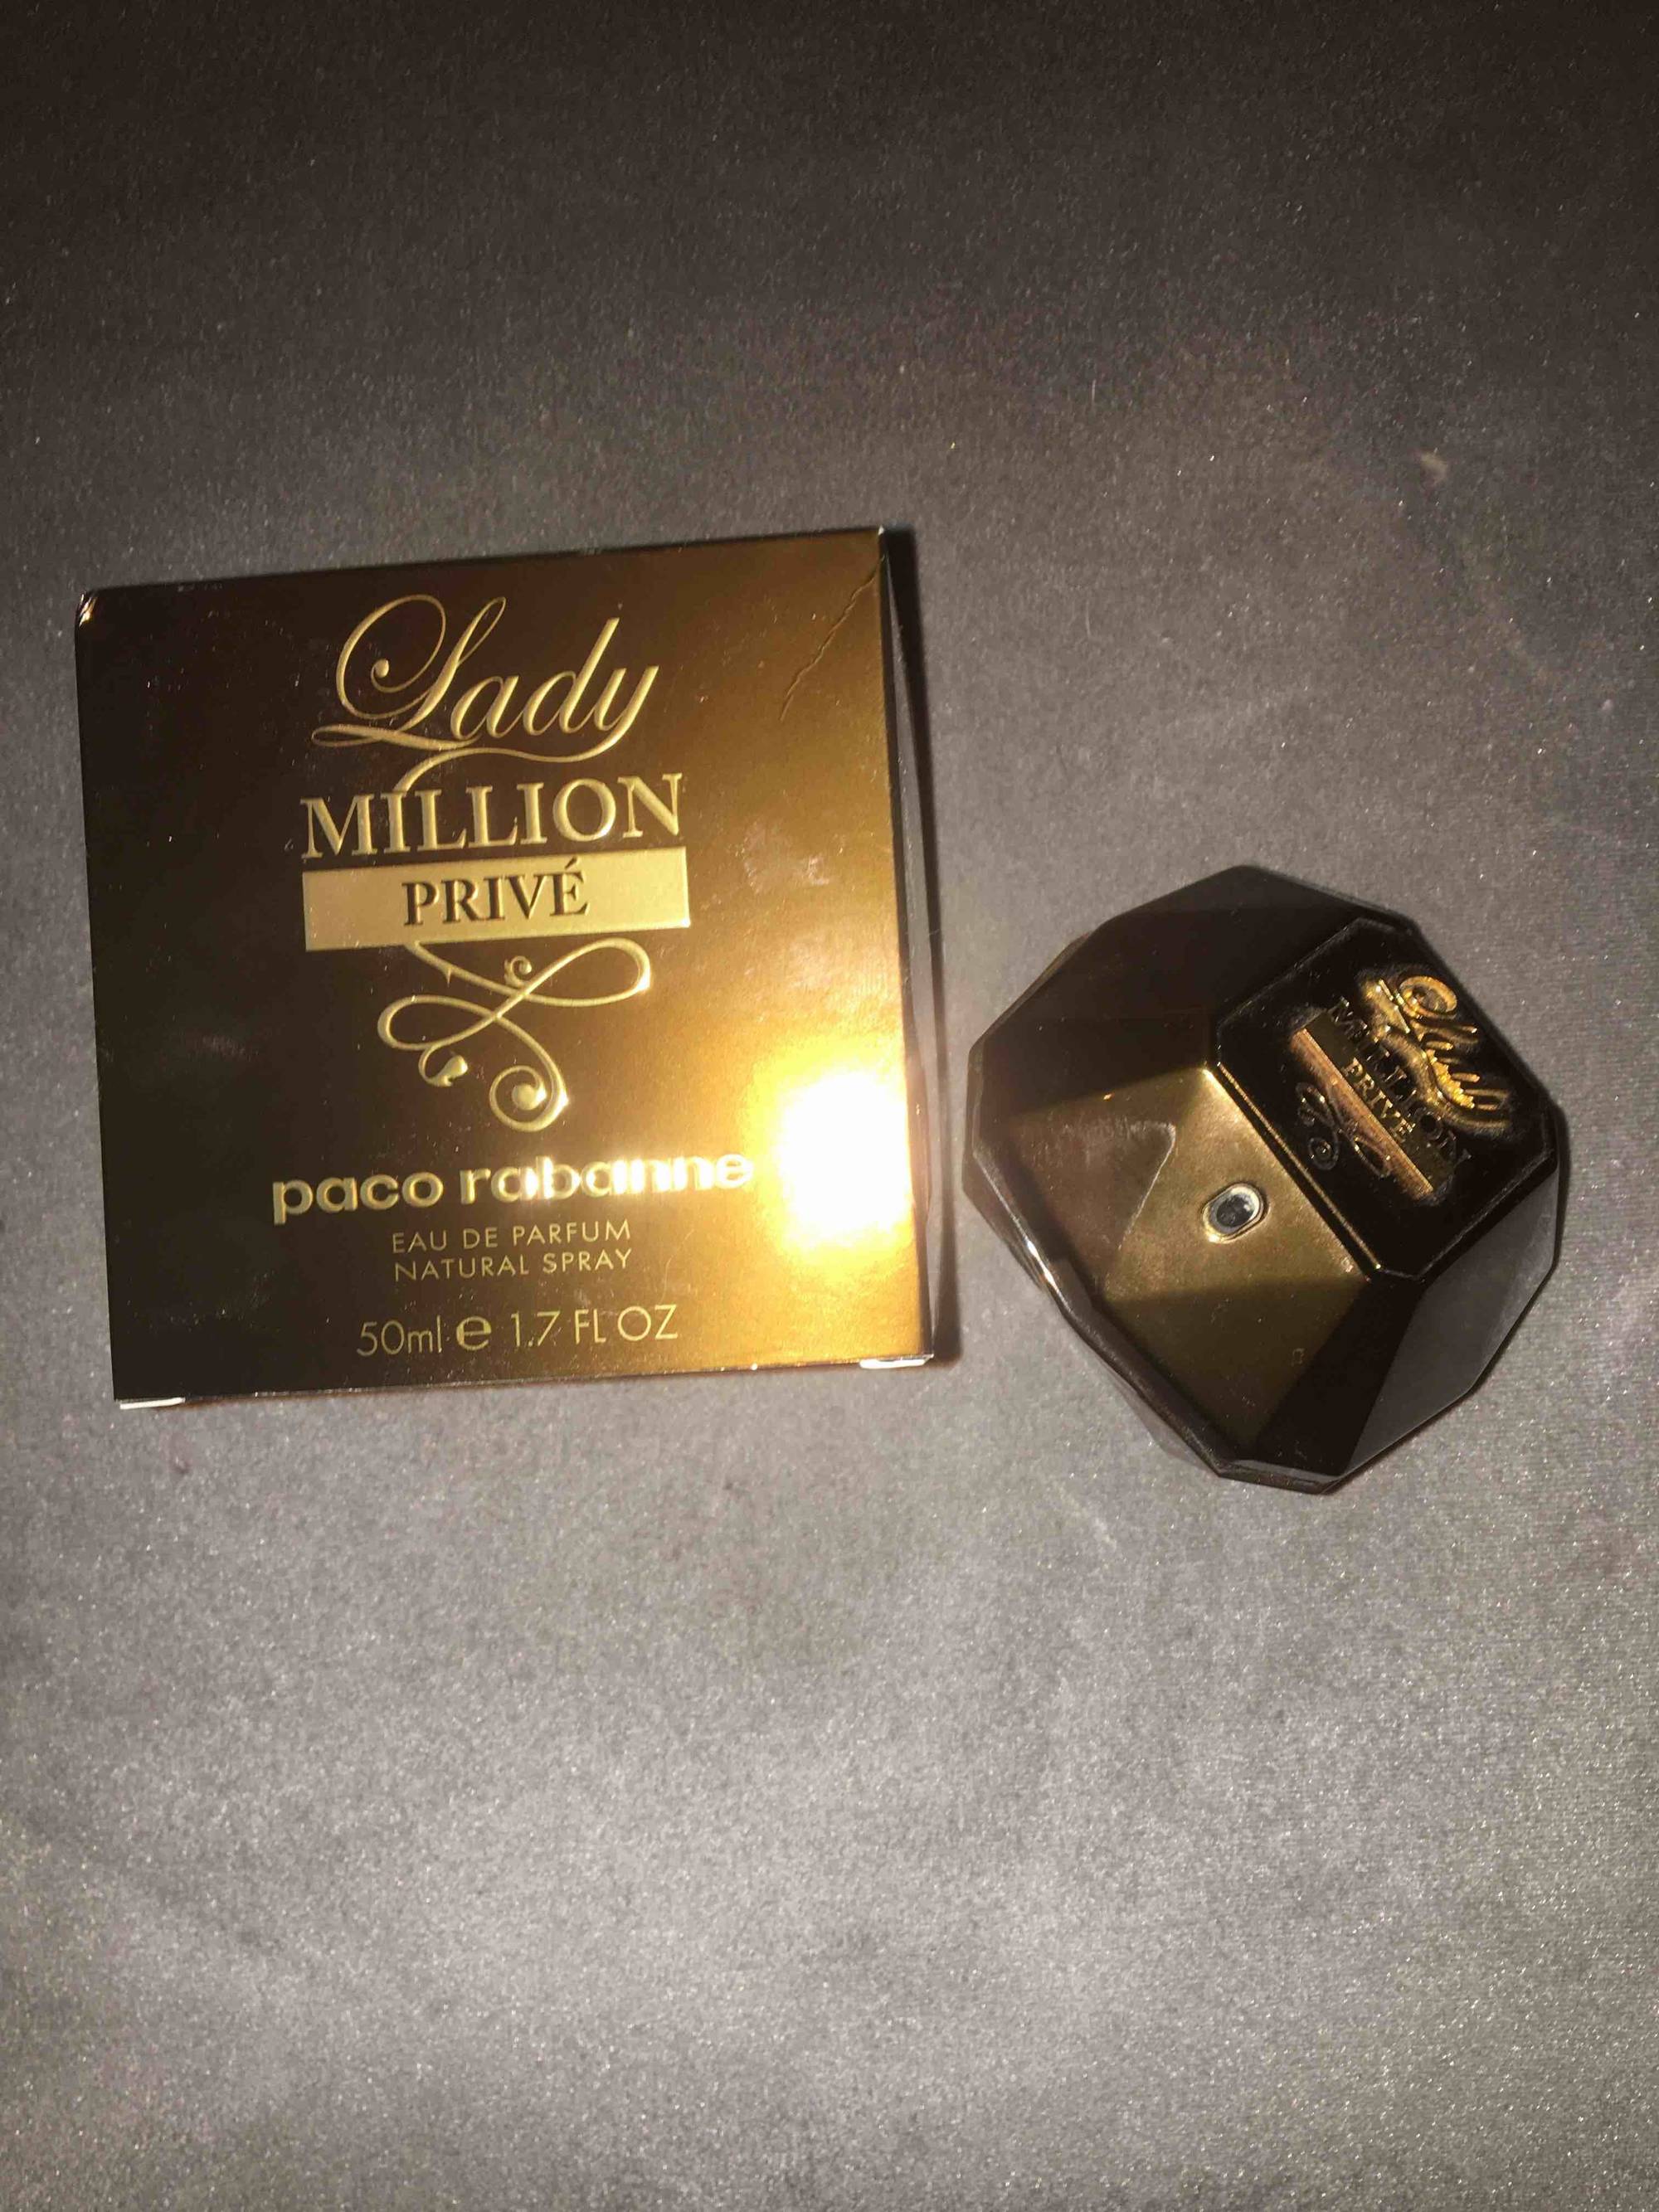 PACO RABANNE - Lady million privé - Eau de parfum